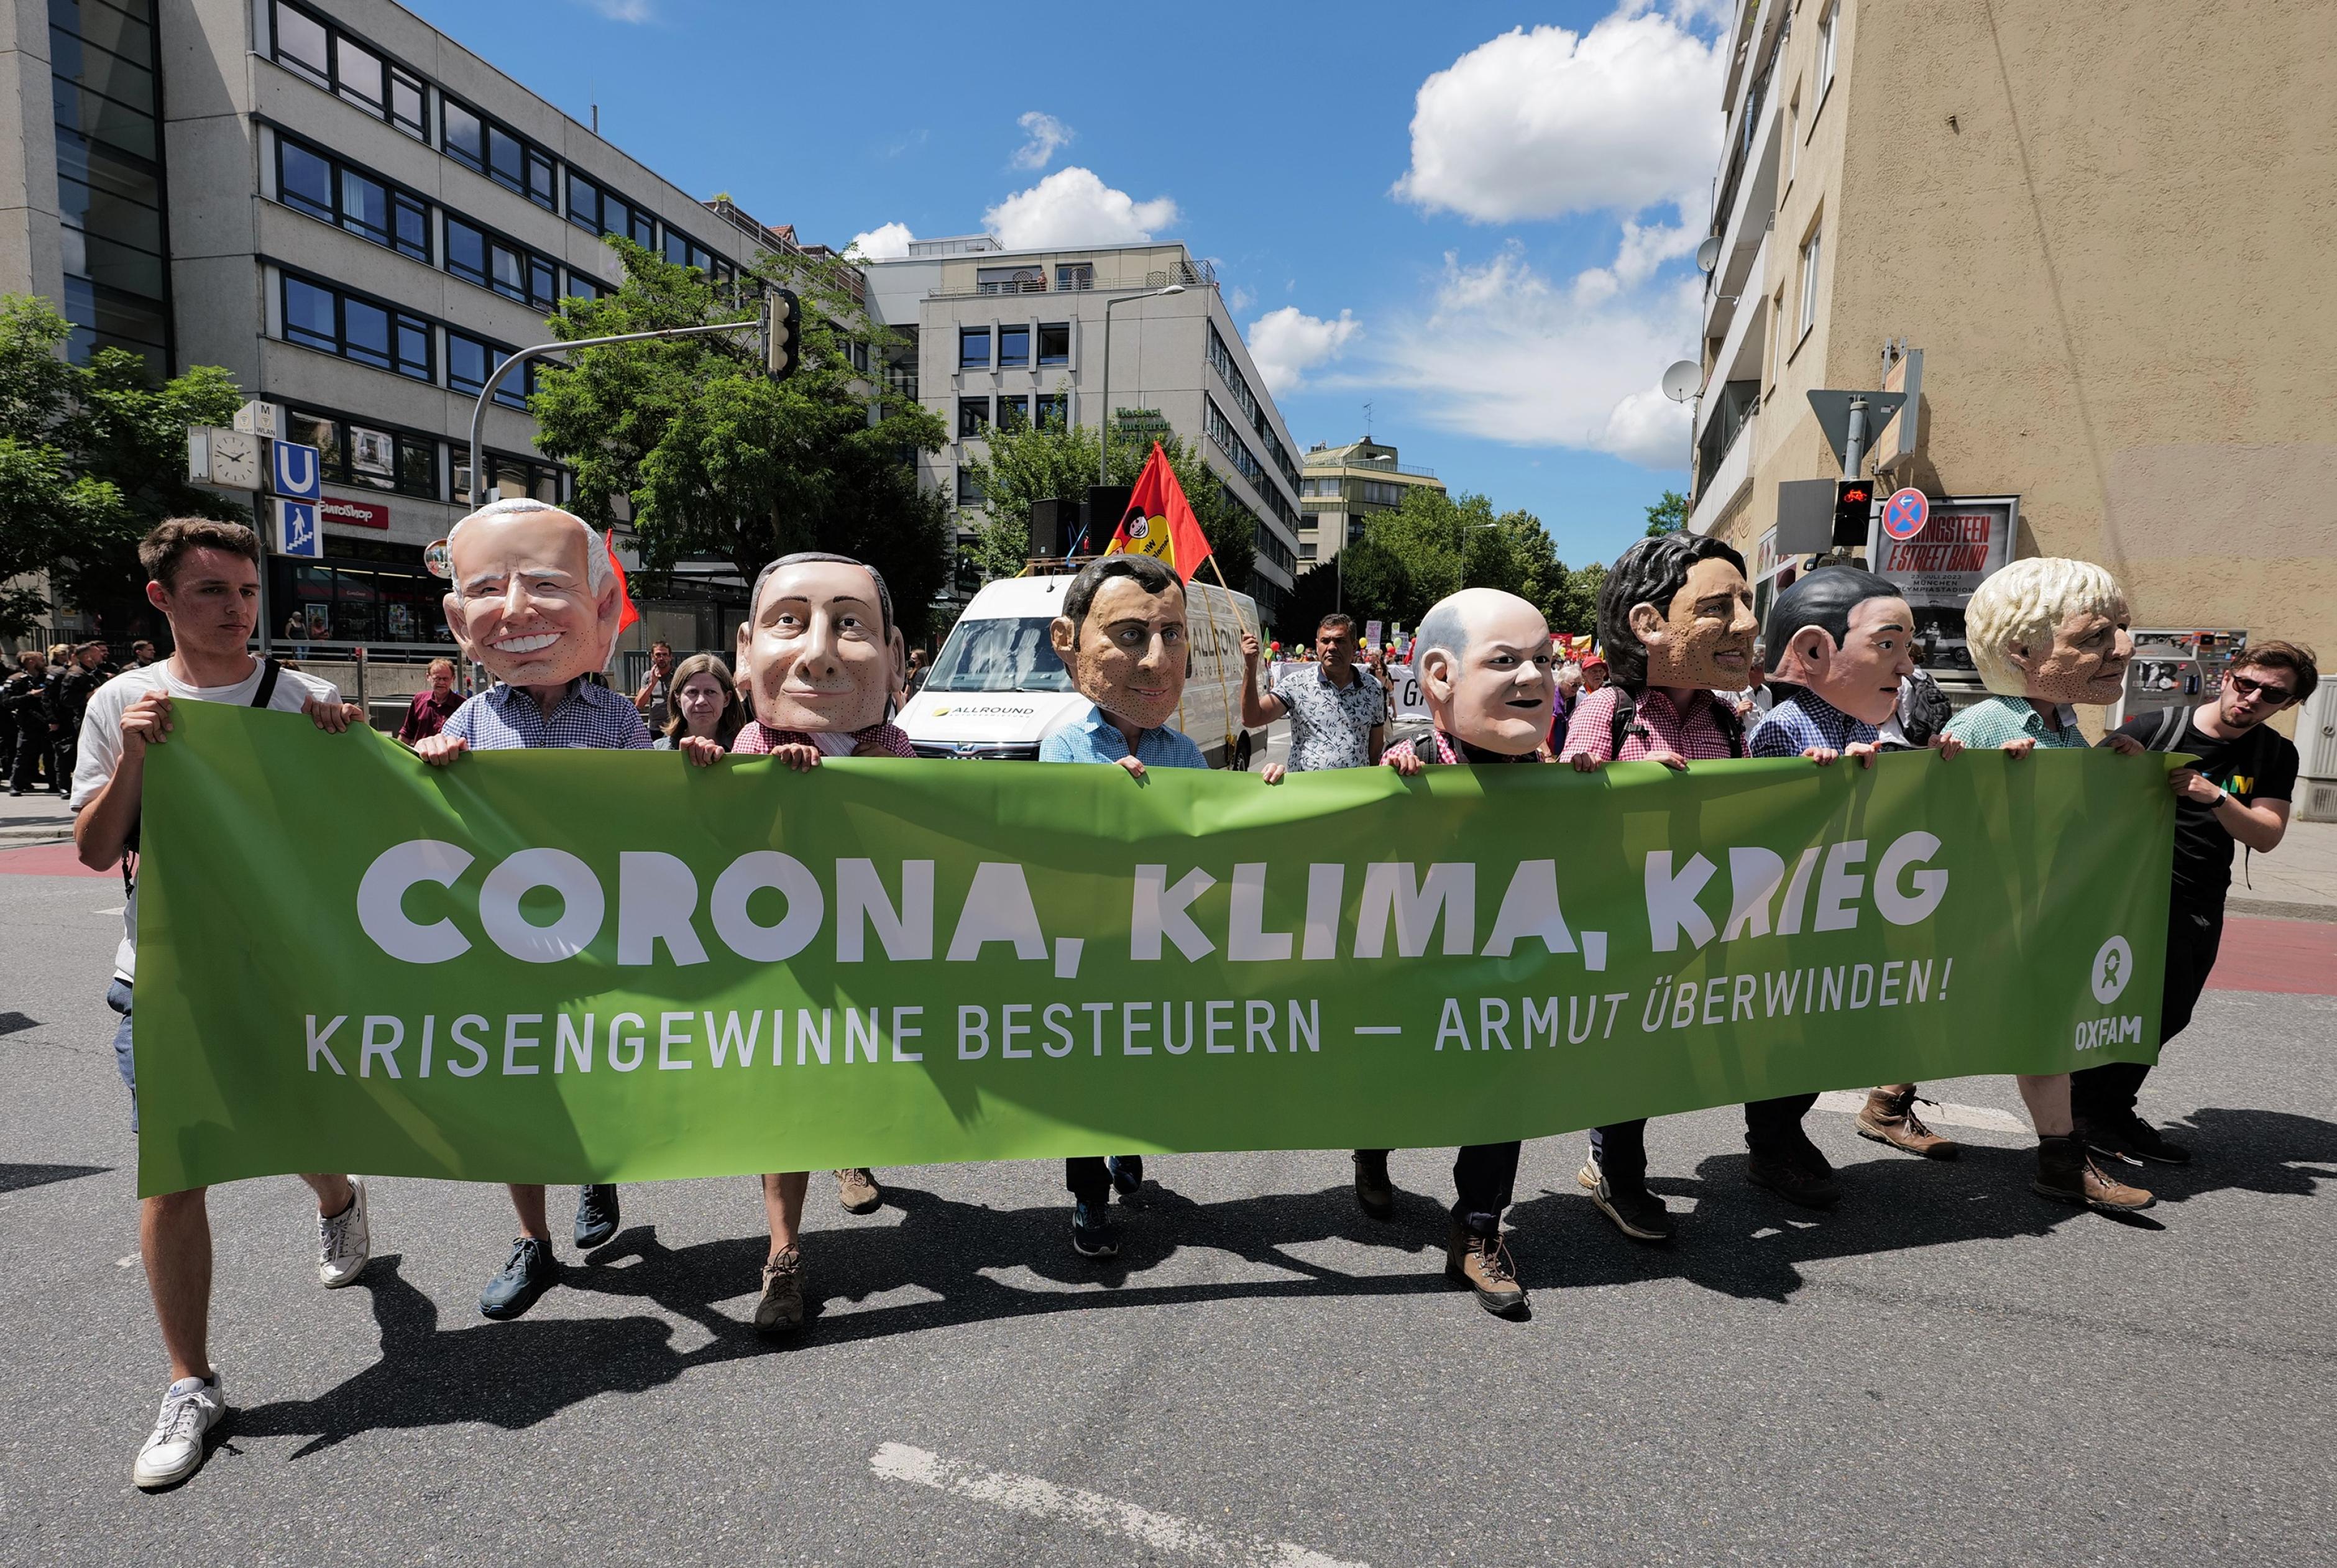 9 Oxfam-Mitarbeiter*innen tragen einen grünen Banner mit der Aufschrift "Corona, Klima, Krieg: Krisengewinne besteuern - Armut überwinden" auf der G7-Demo 2022. 7 von ihnen (mittig) tragen Big-Heads und posieren so als G7-Regierungschefs.